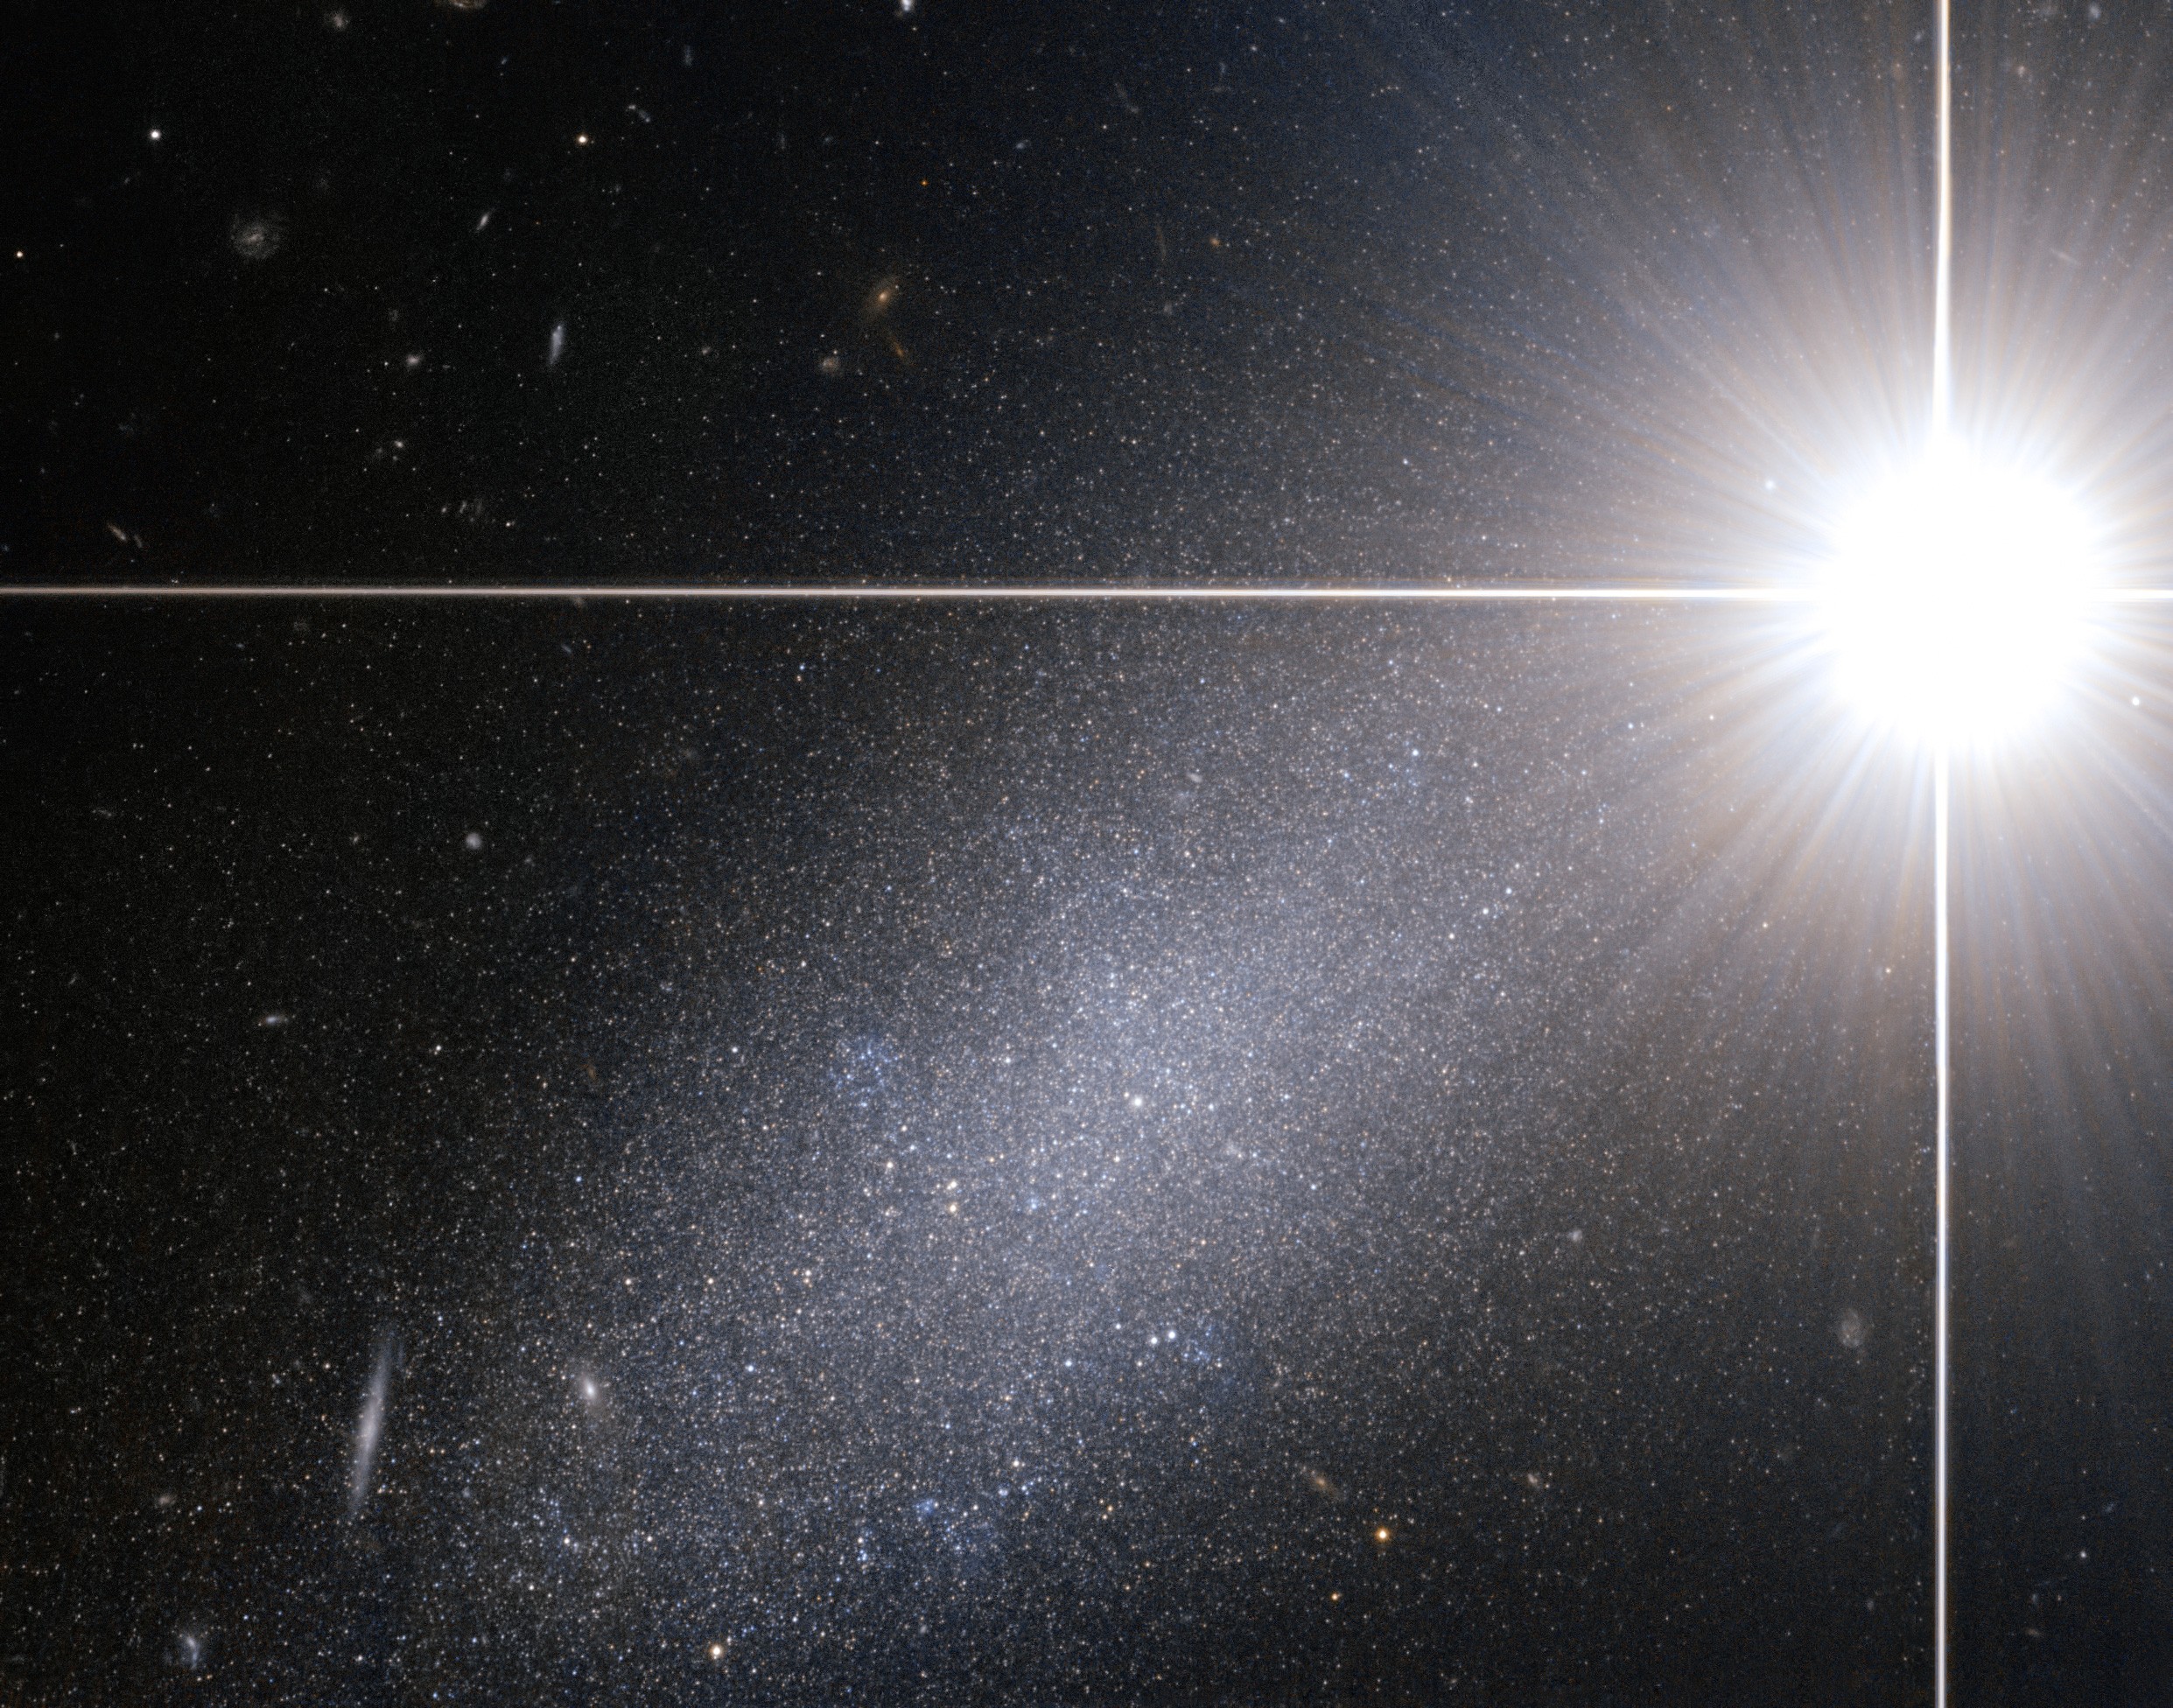 Galáxia anã encontrada dentro da constelação de Draco (Foto: ESA/Hubble)